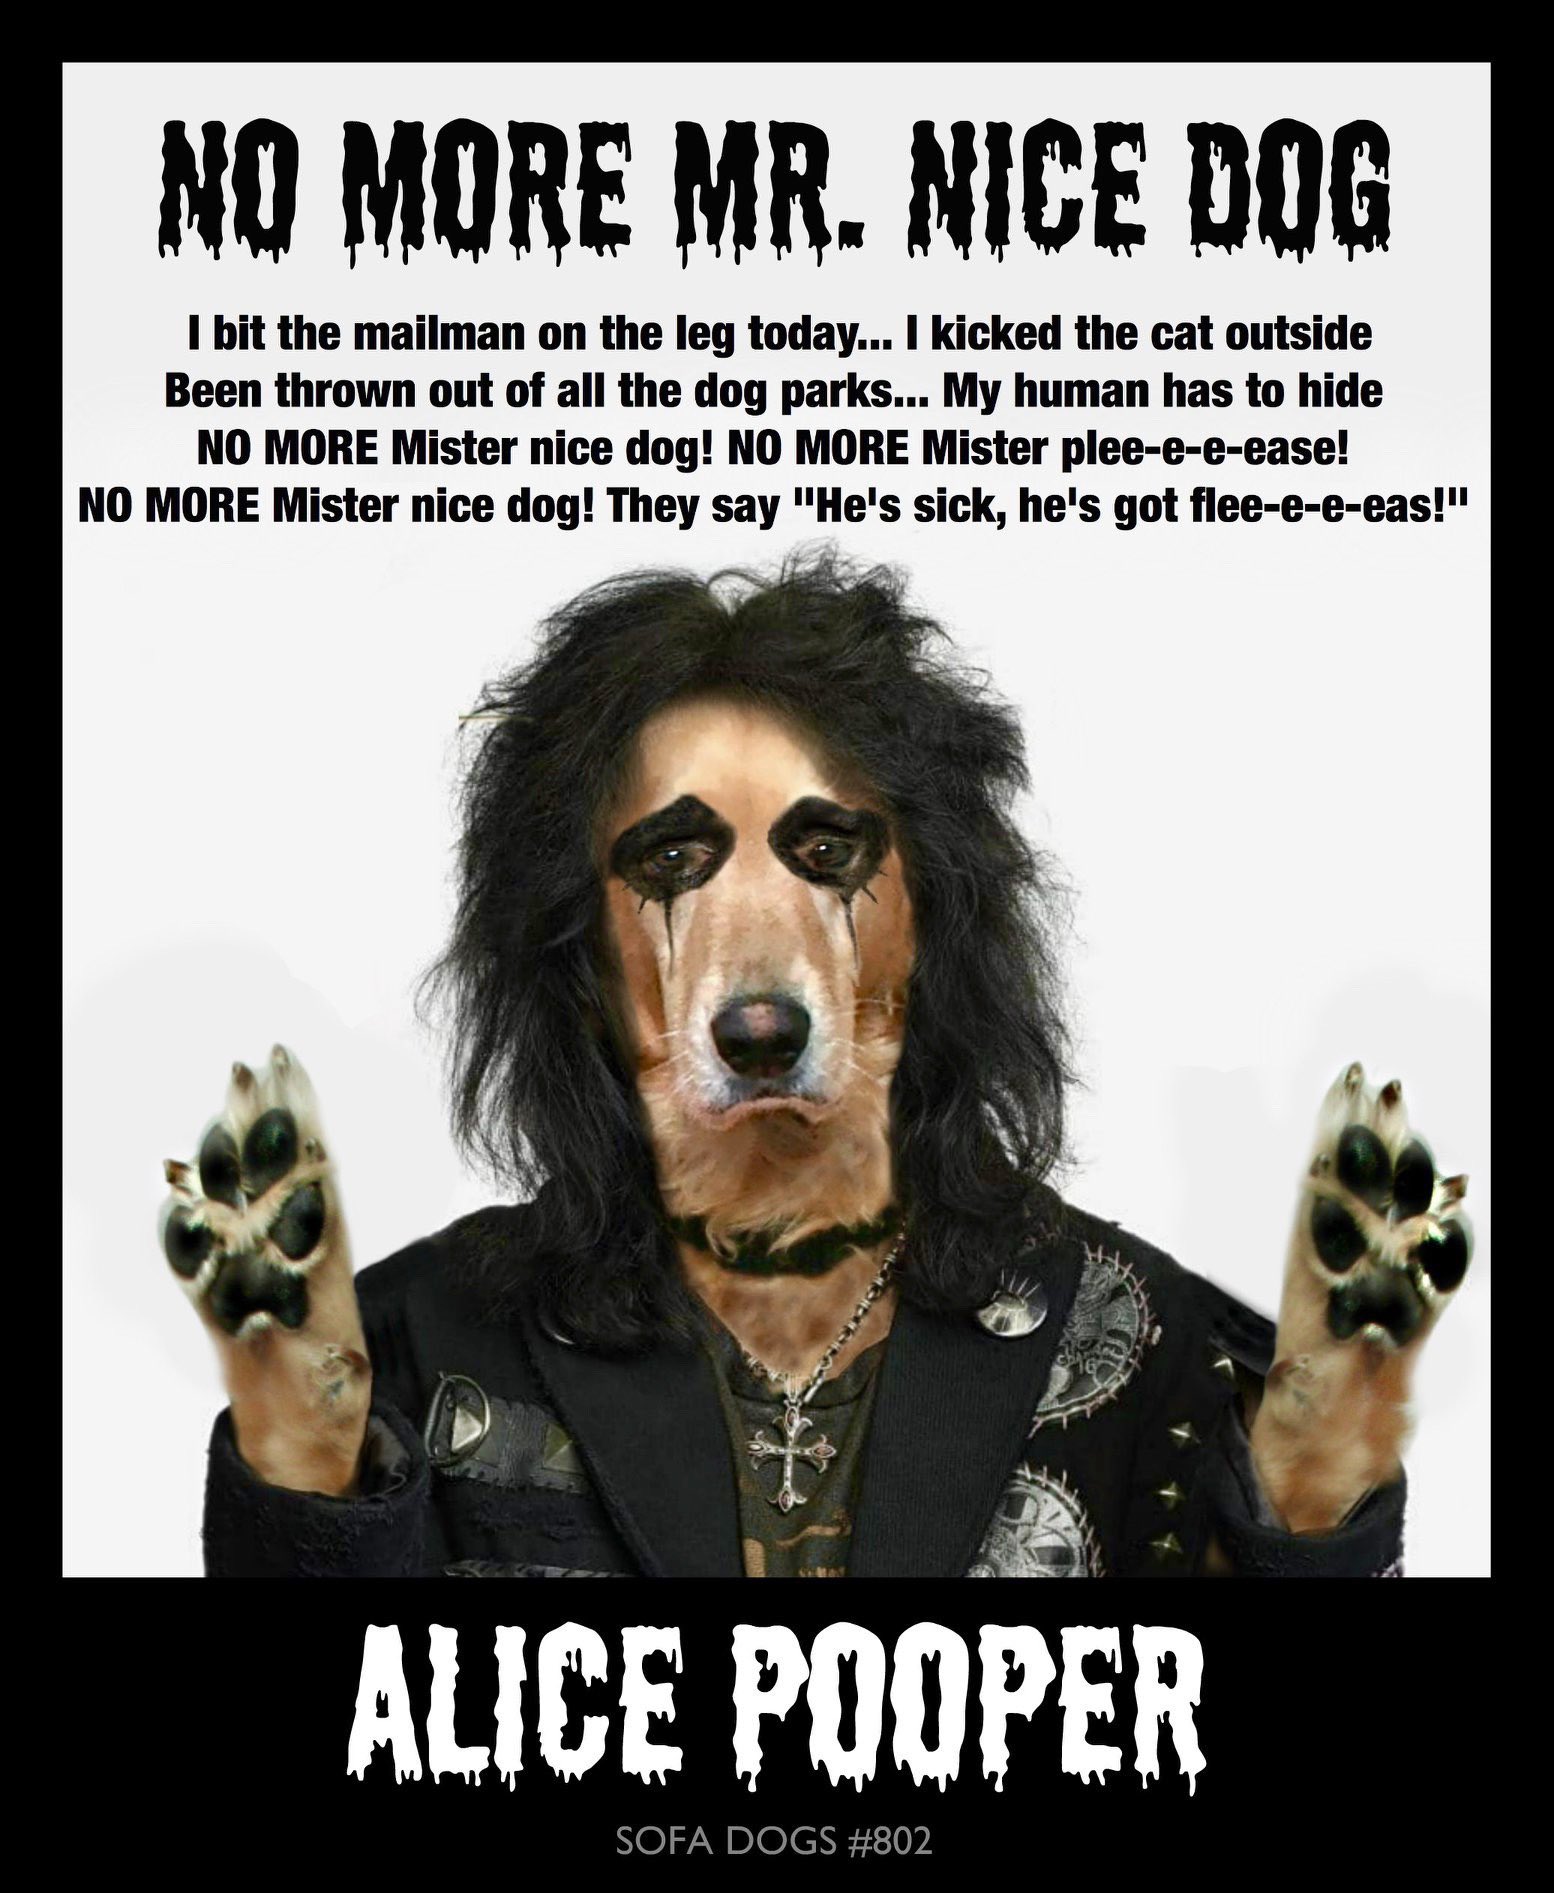 ALICE POOPER
(Happy Birthday Alice Cooper)
NEW EPISODE Sofa Dogs 